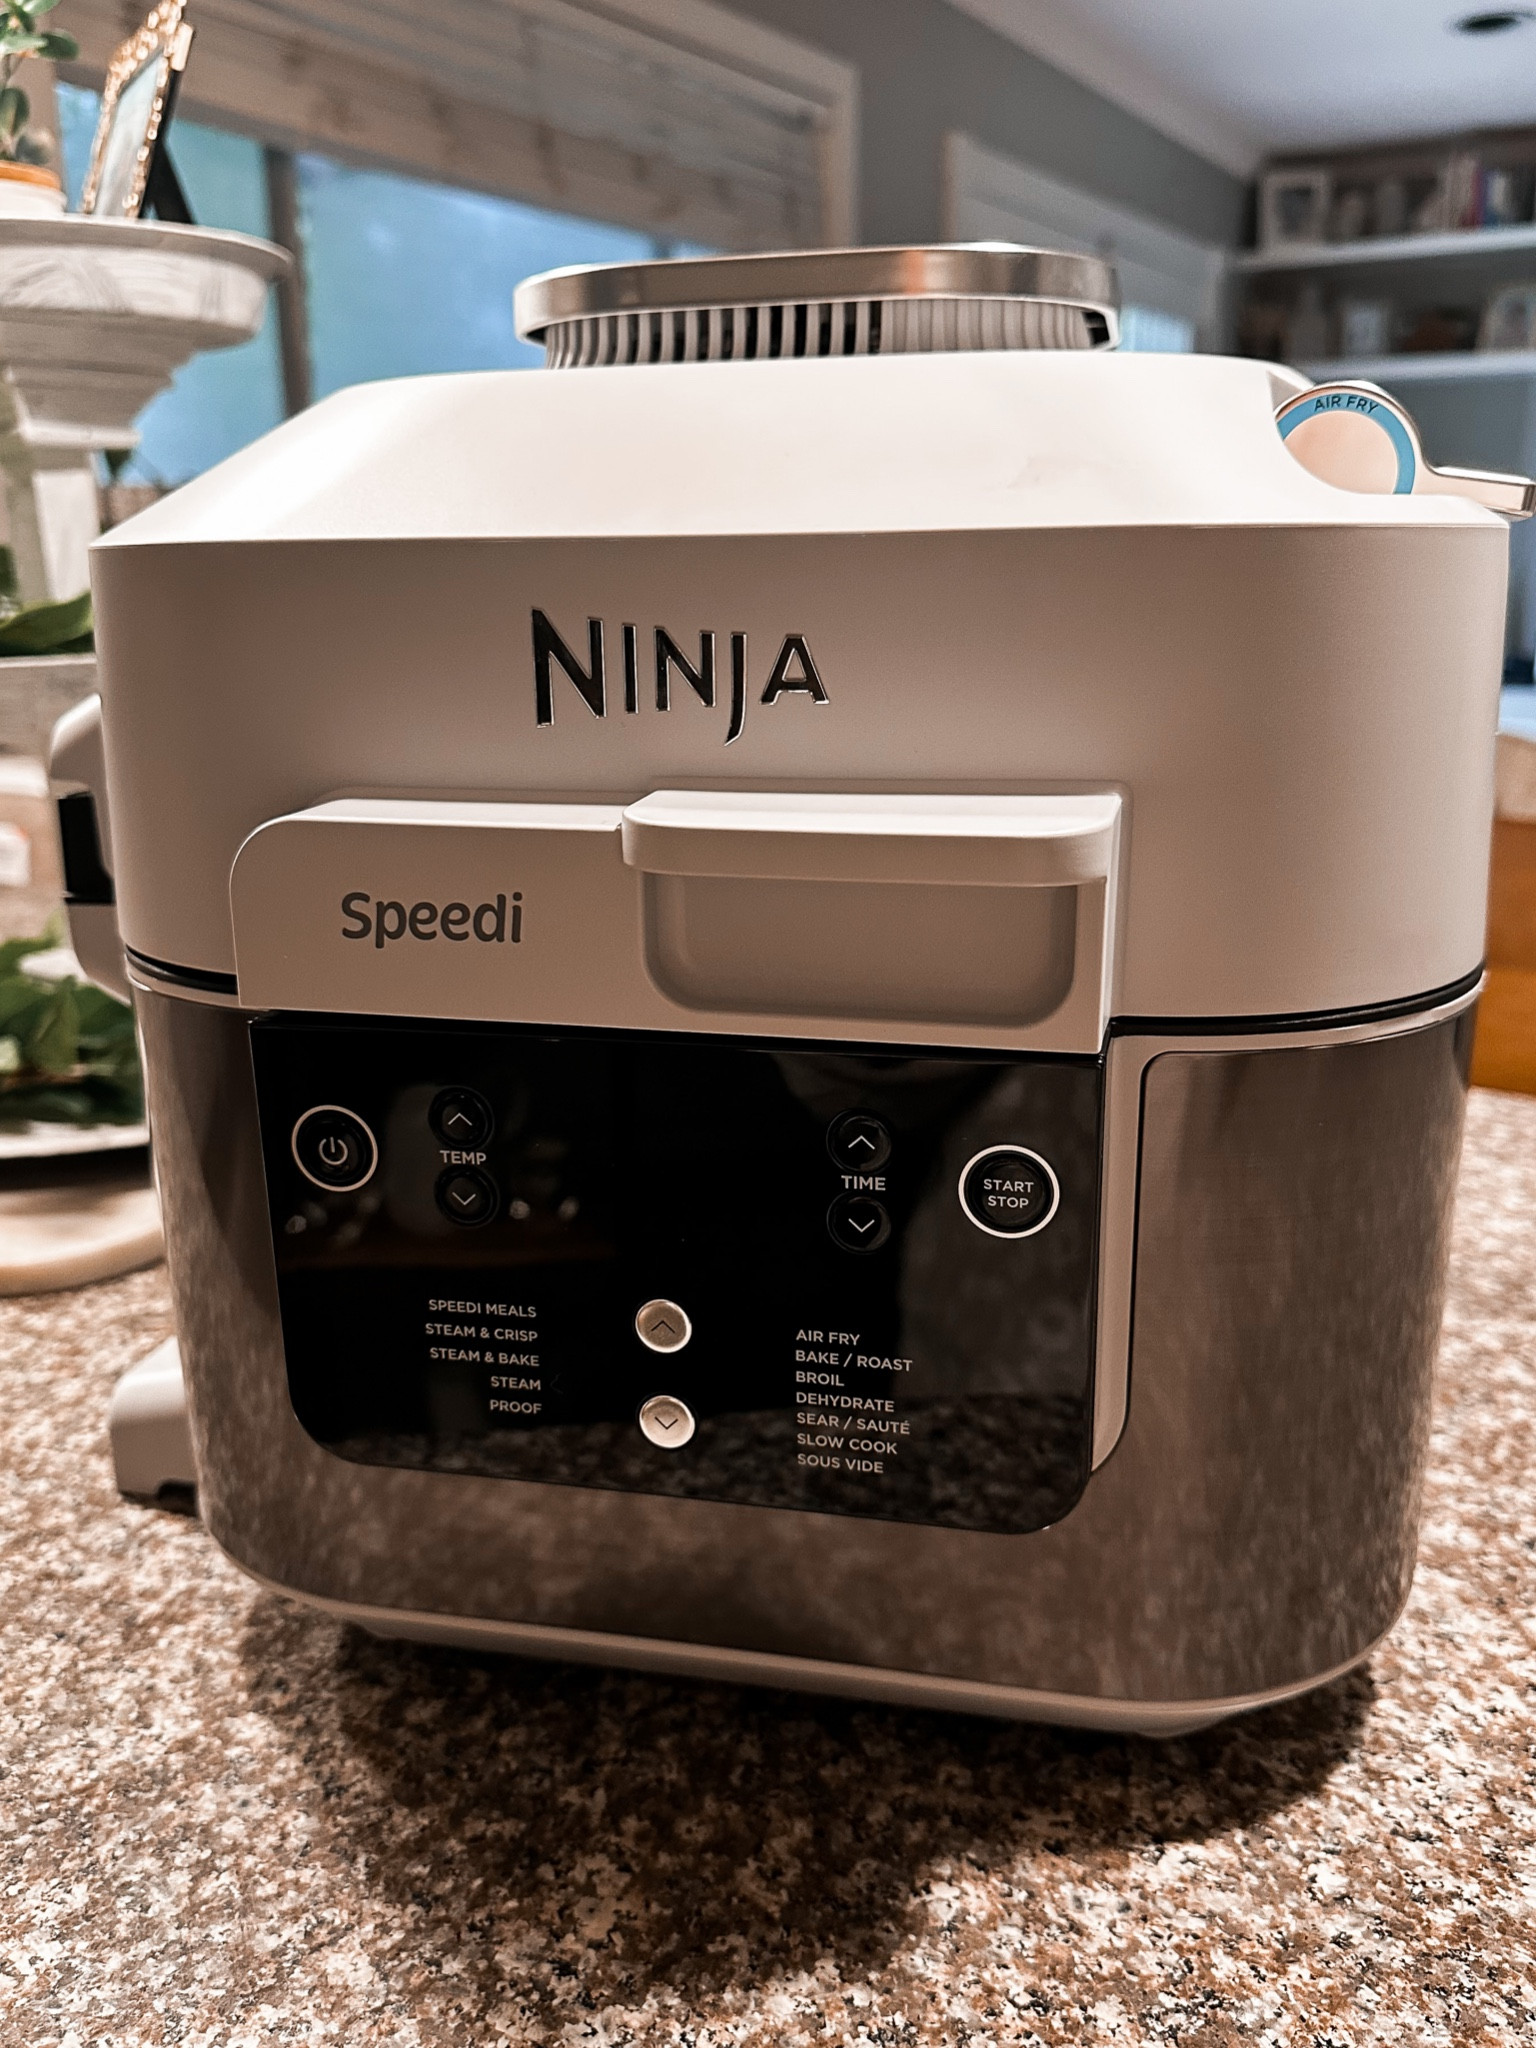 Ninja Speedi 6-qt Rapid Cooker & Air Fryer withMulticook Pan